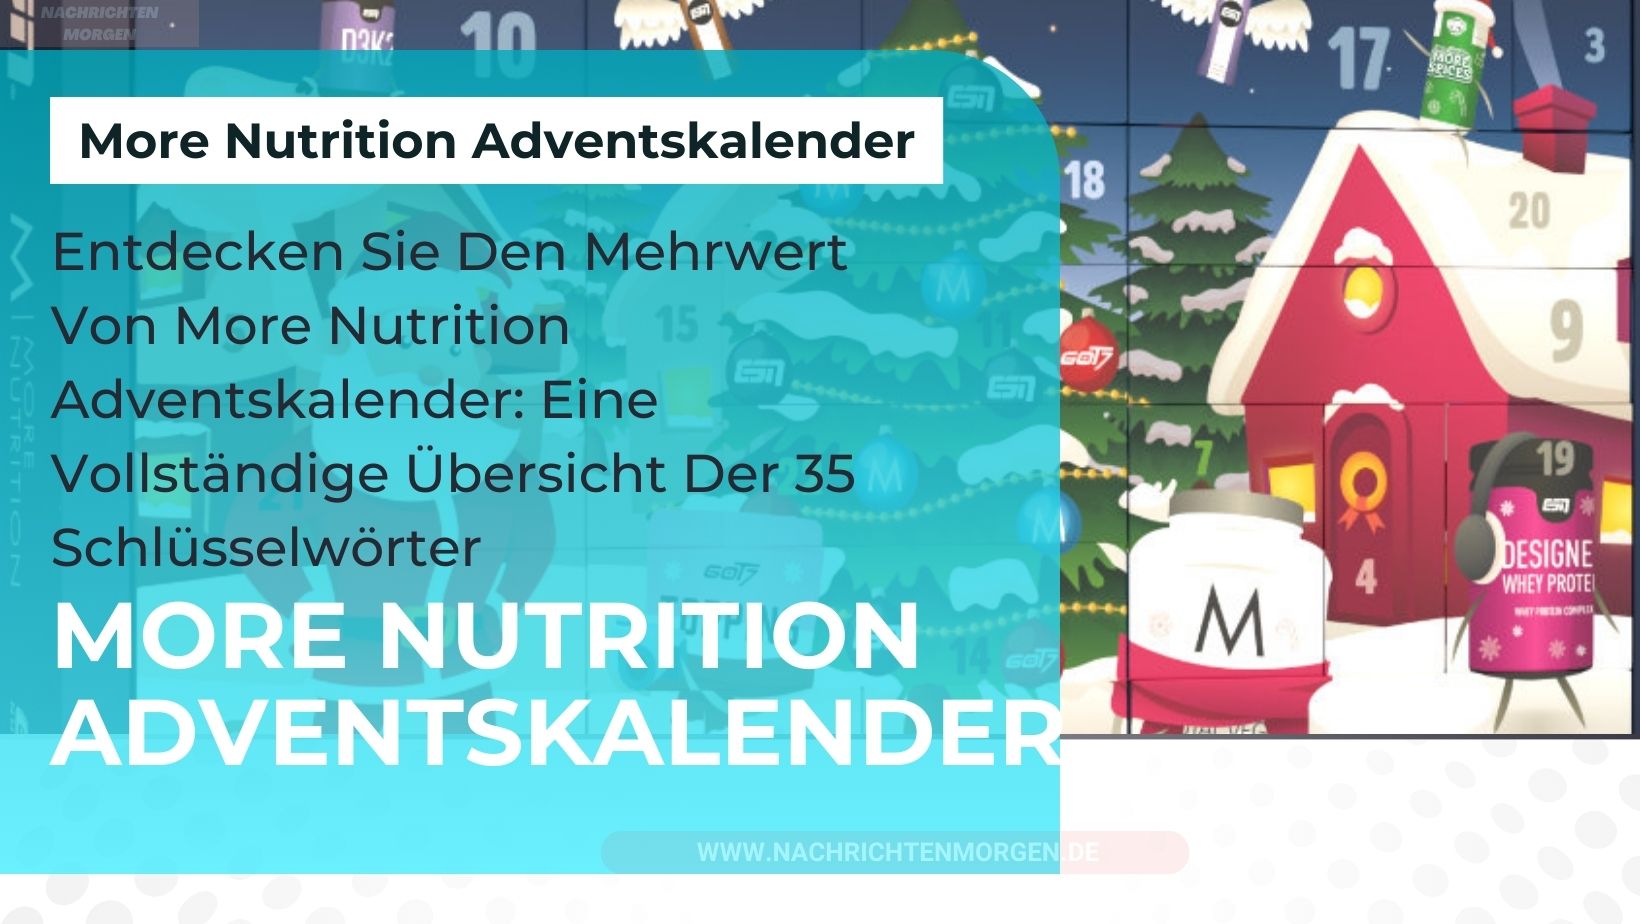 more nutrition adventskalender